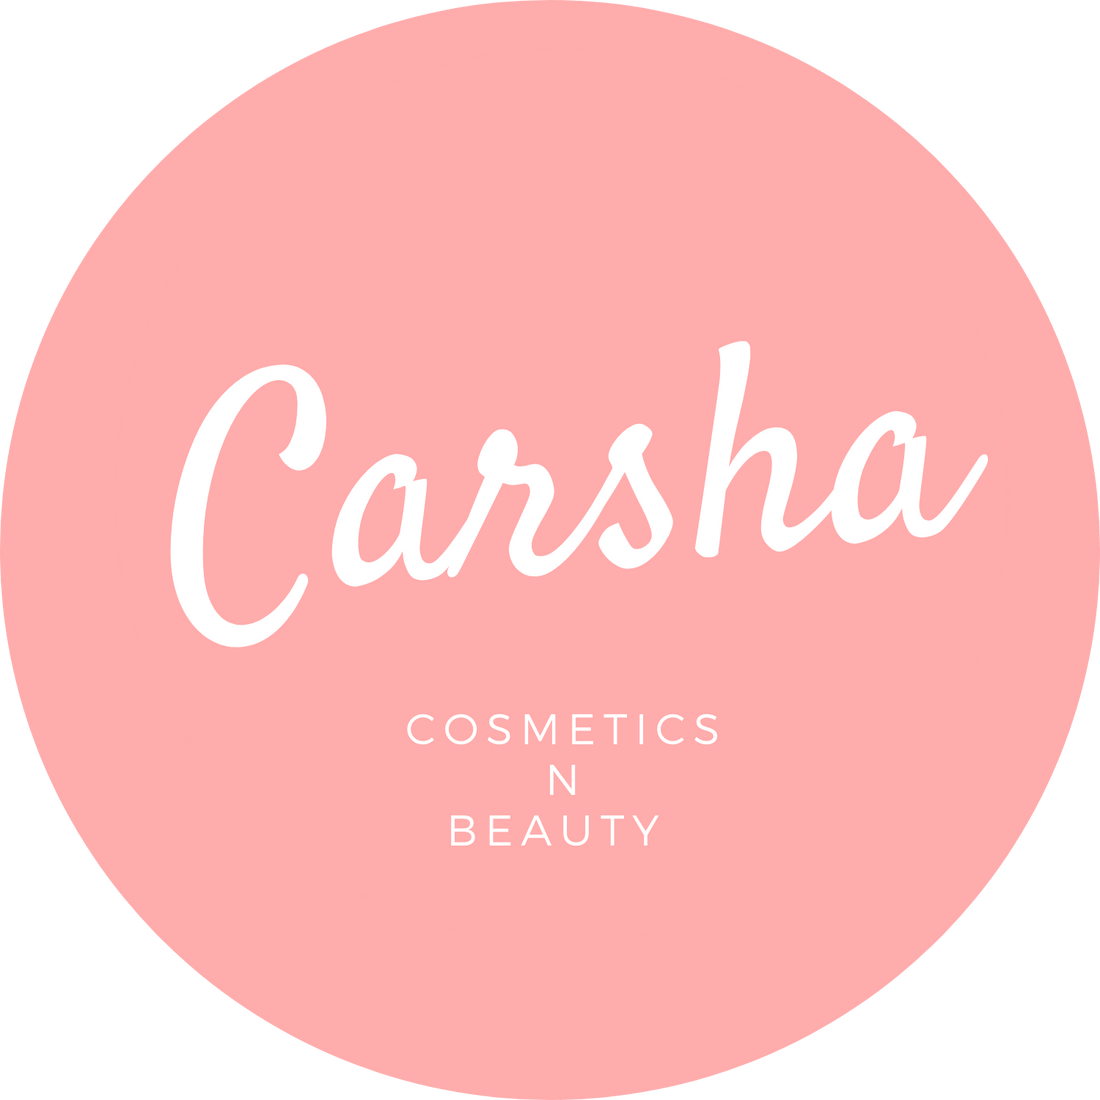 Carsha Logo | Beauty Wholesale & Retail